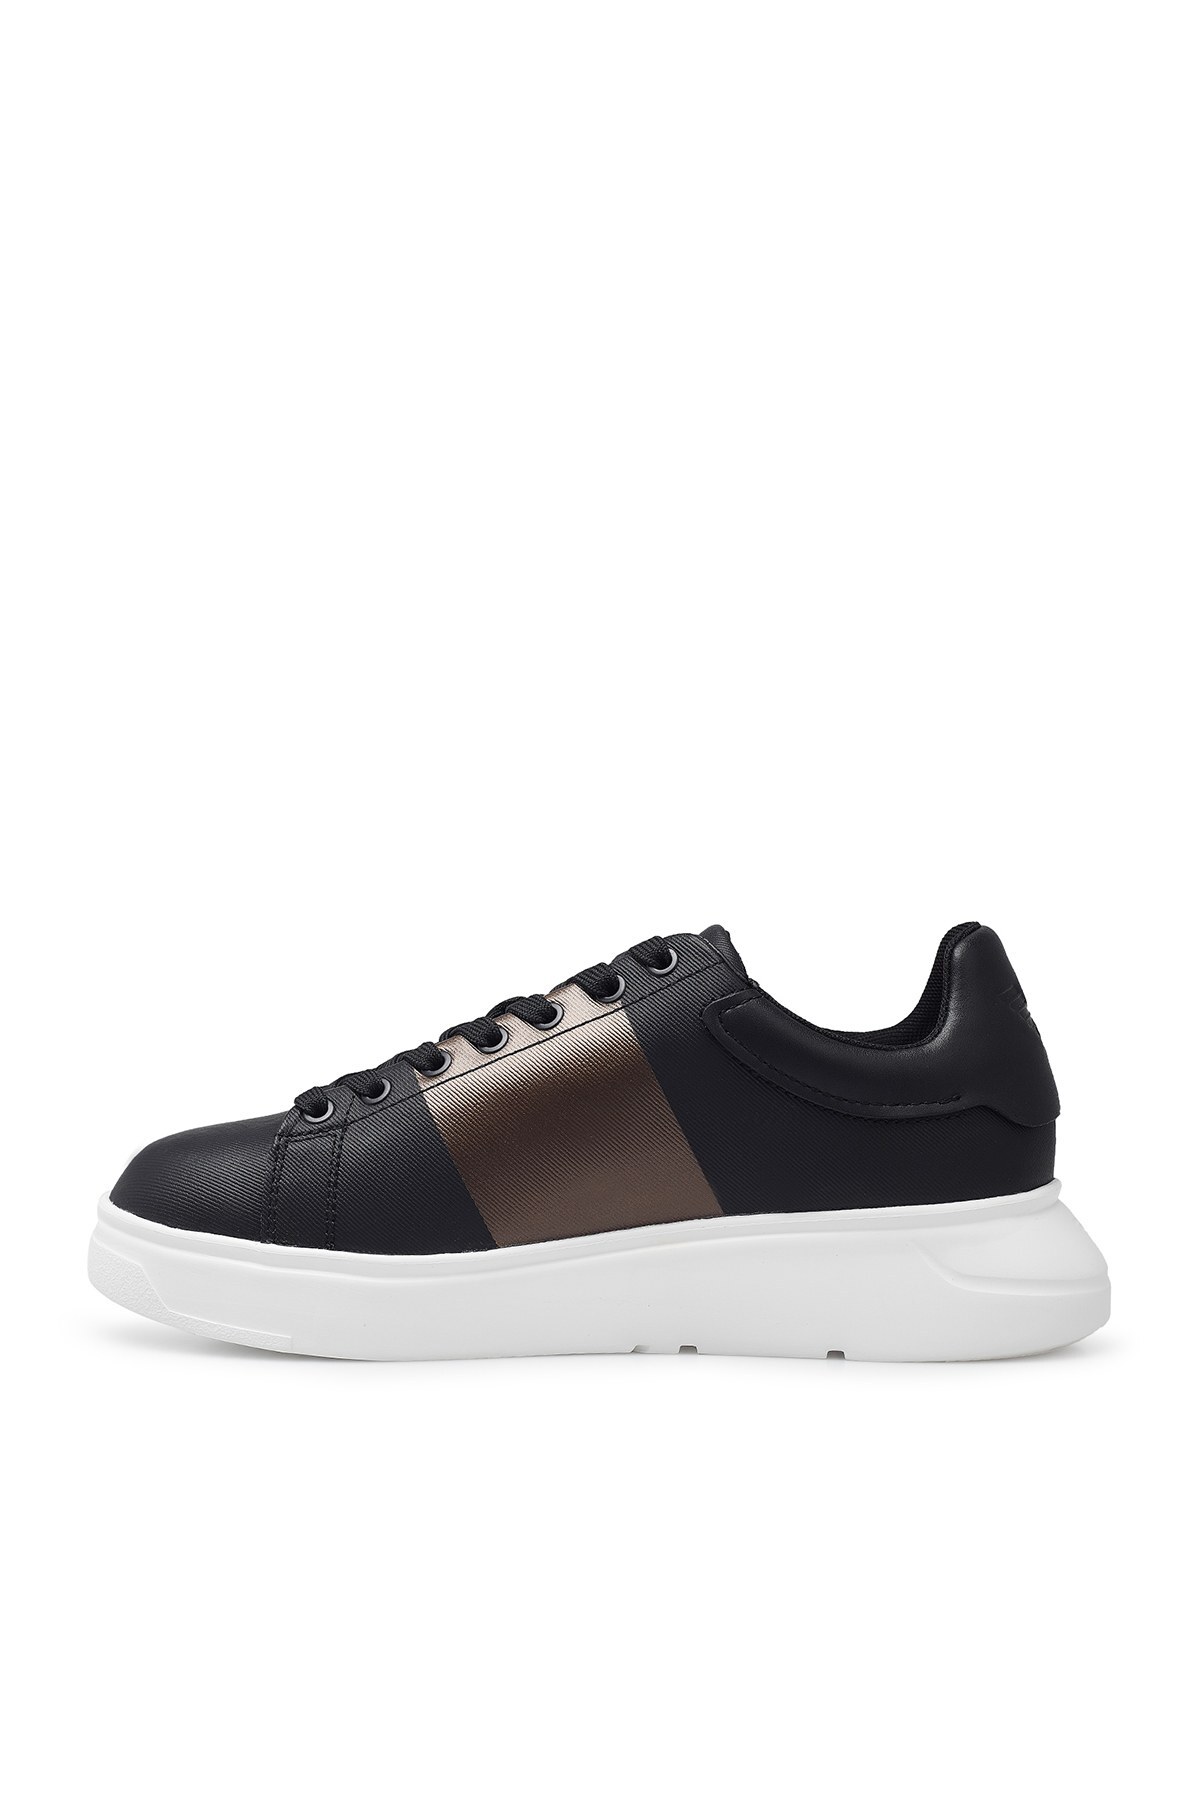 Emporio Armani Sneaker Erkek Ayakkabı S X4X264 XM491 M990 SİYAH-BEYAZ